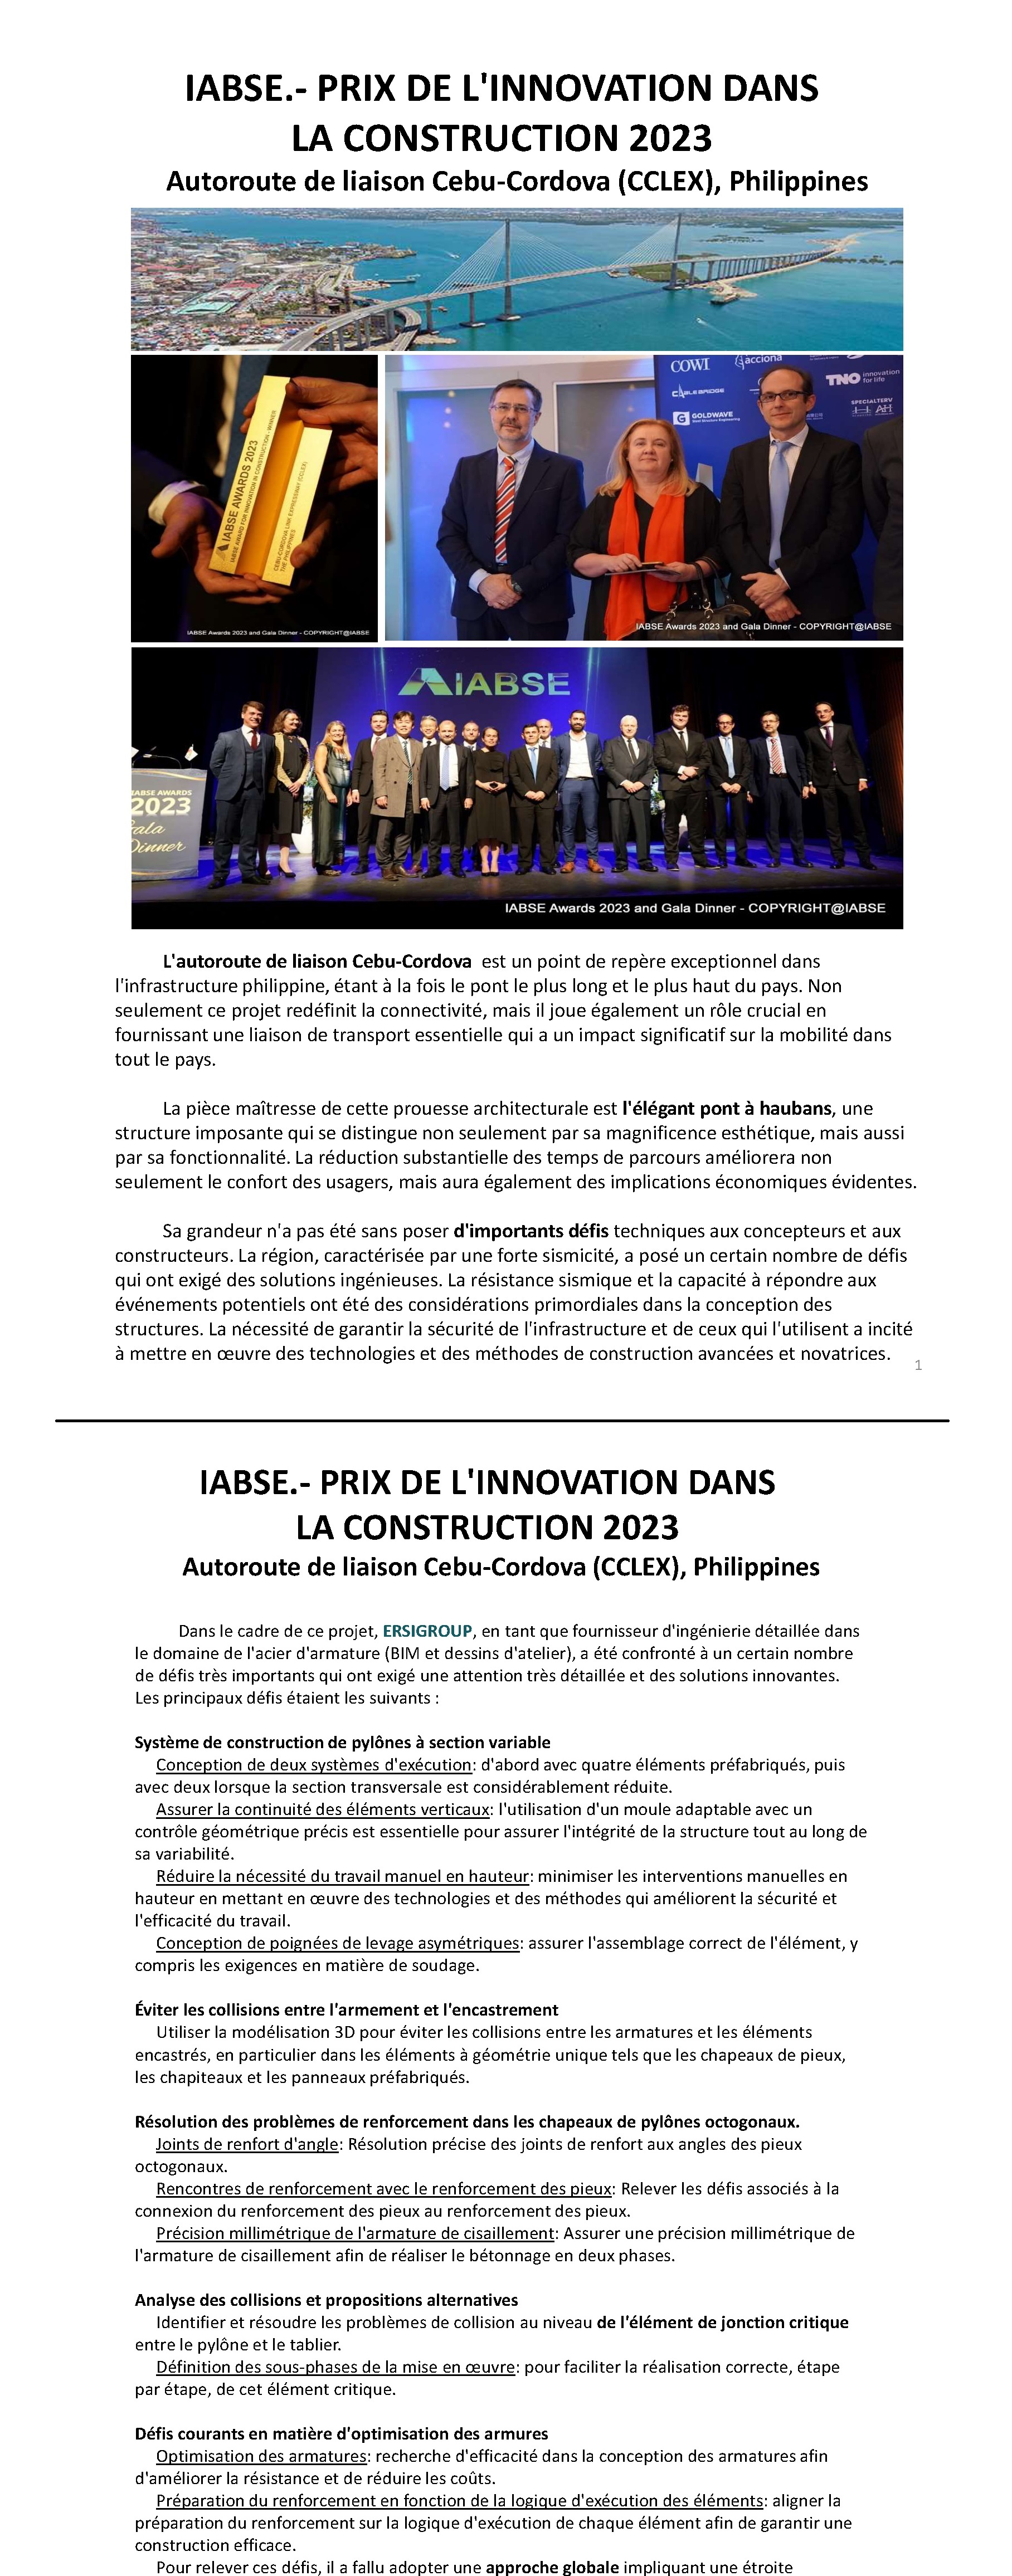 IABSE.- PRIX DE L'INNOVATION DANS LA CONSTRUCTION 2023